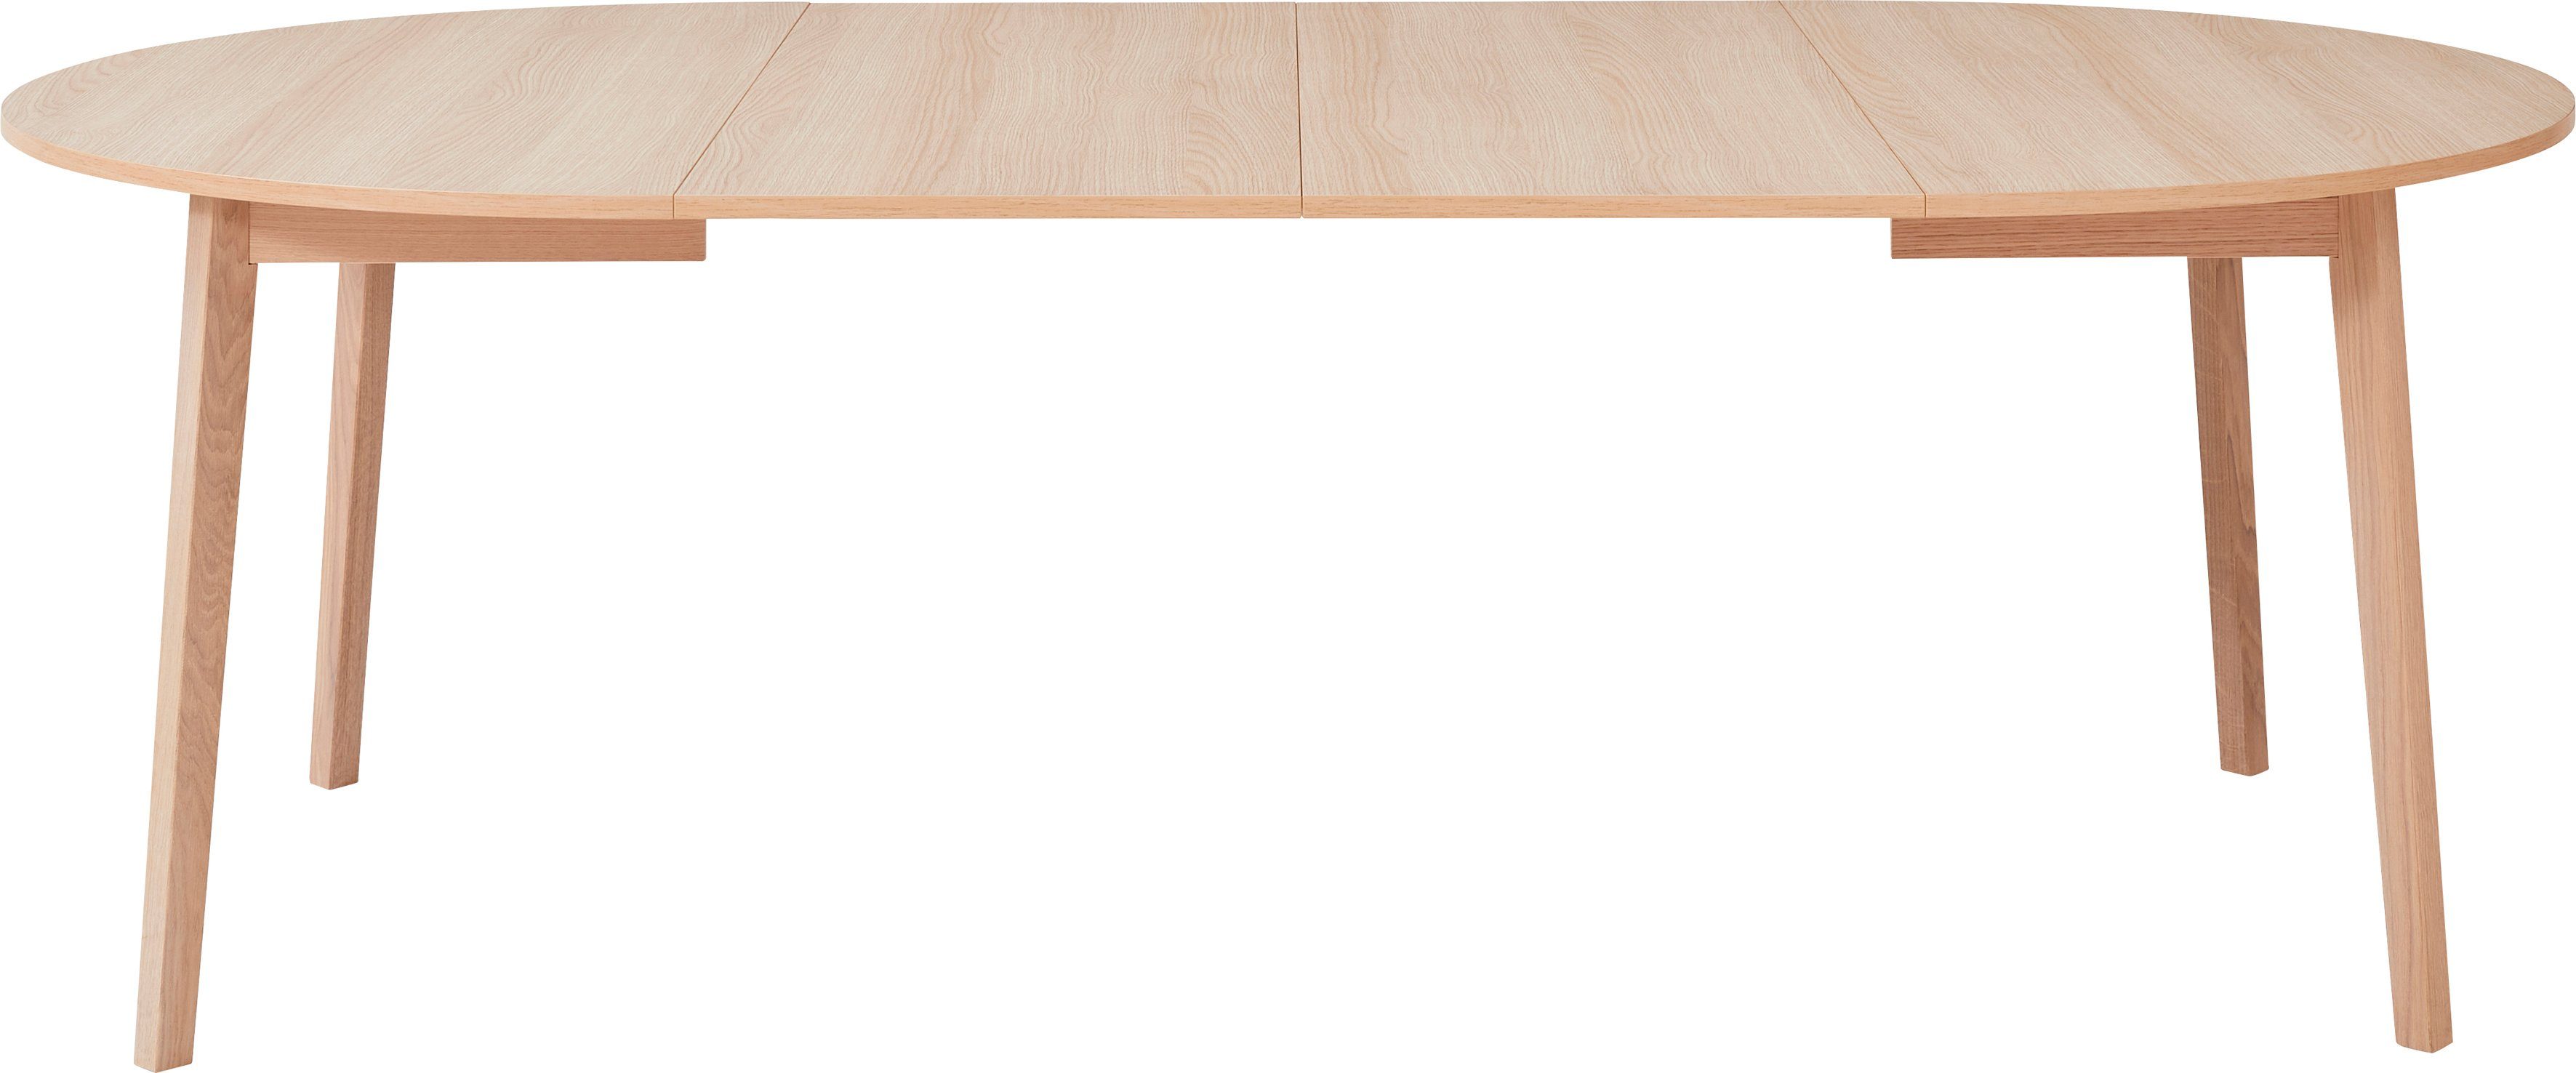 Gestell Einlegeplatten aus Hammel Esstisch by cm, Single, Massivholz, Basic inklusive Naturfarben Hammel 2 Furniture Ø130/228